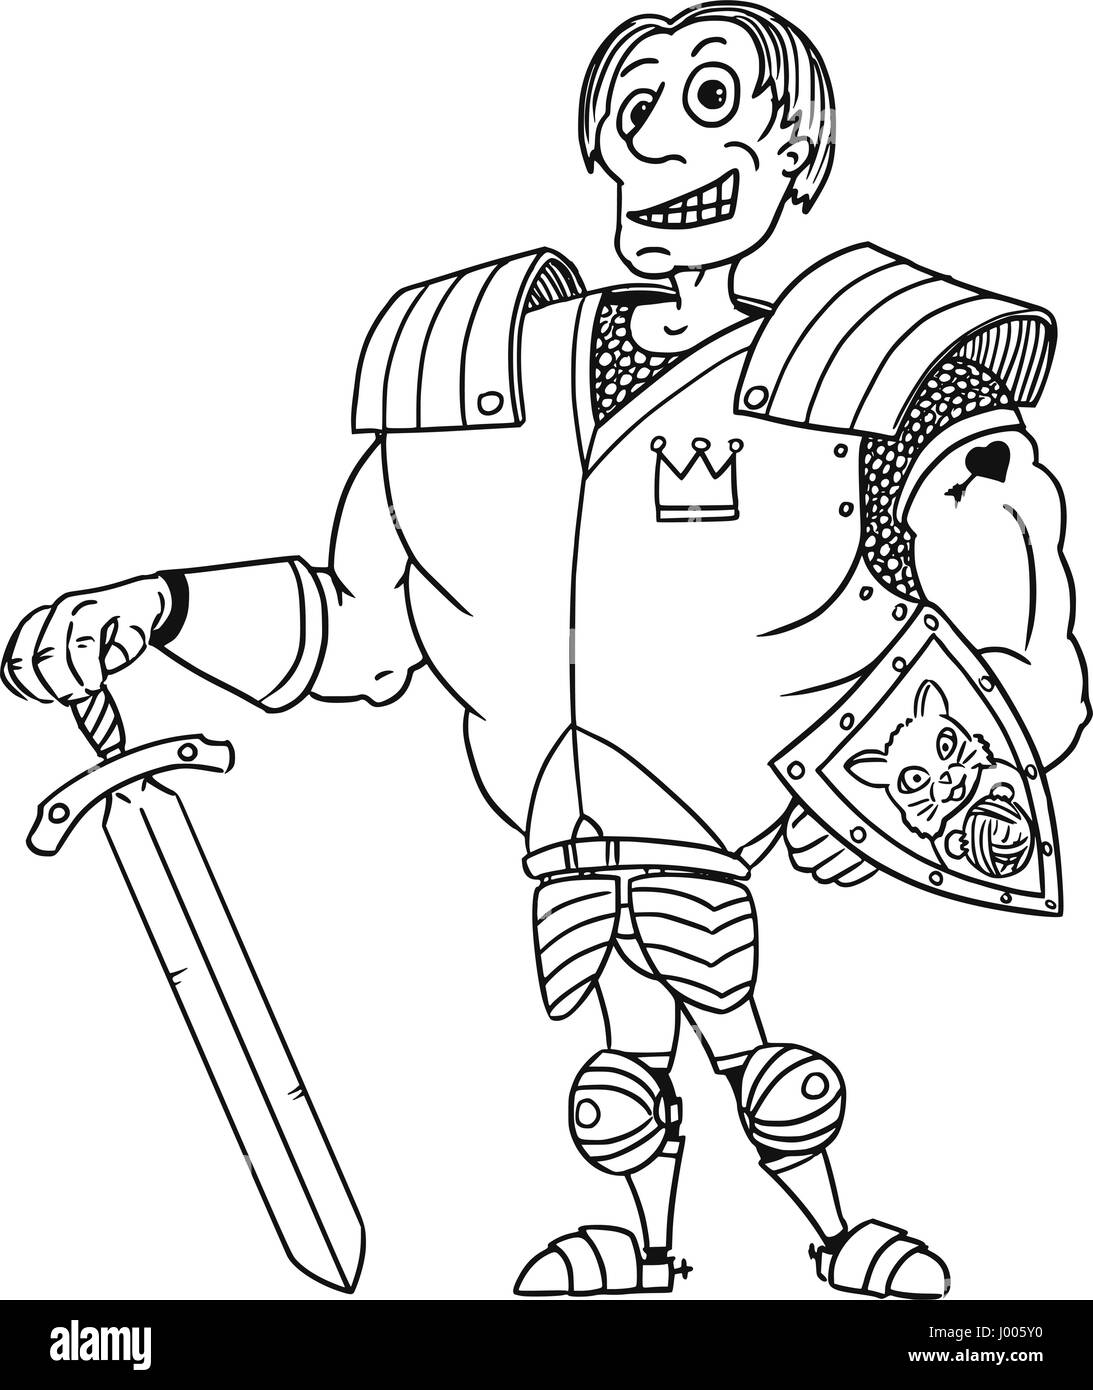 Cartoon vector old royal médiéval fantasy Prince Charmant héros chevalier avec armure, épée, bouclier et sourire Illustration de Vecteur